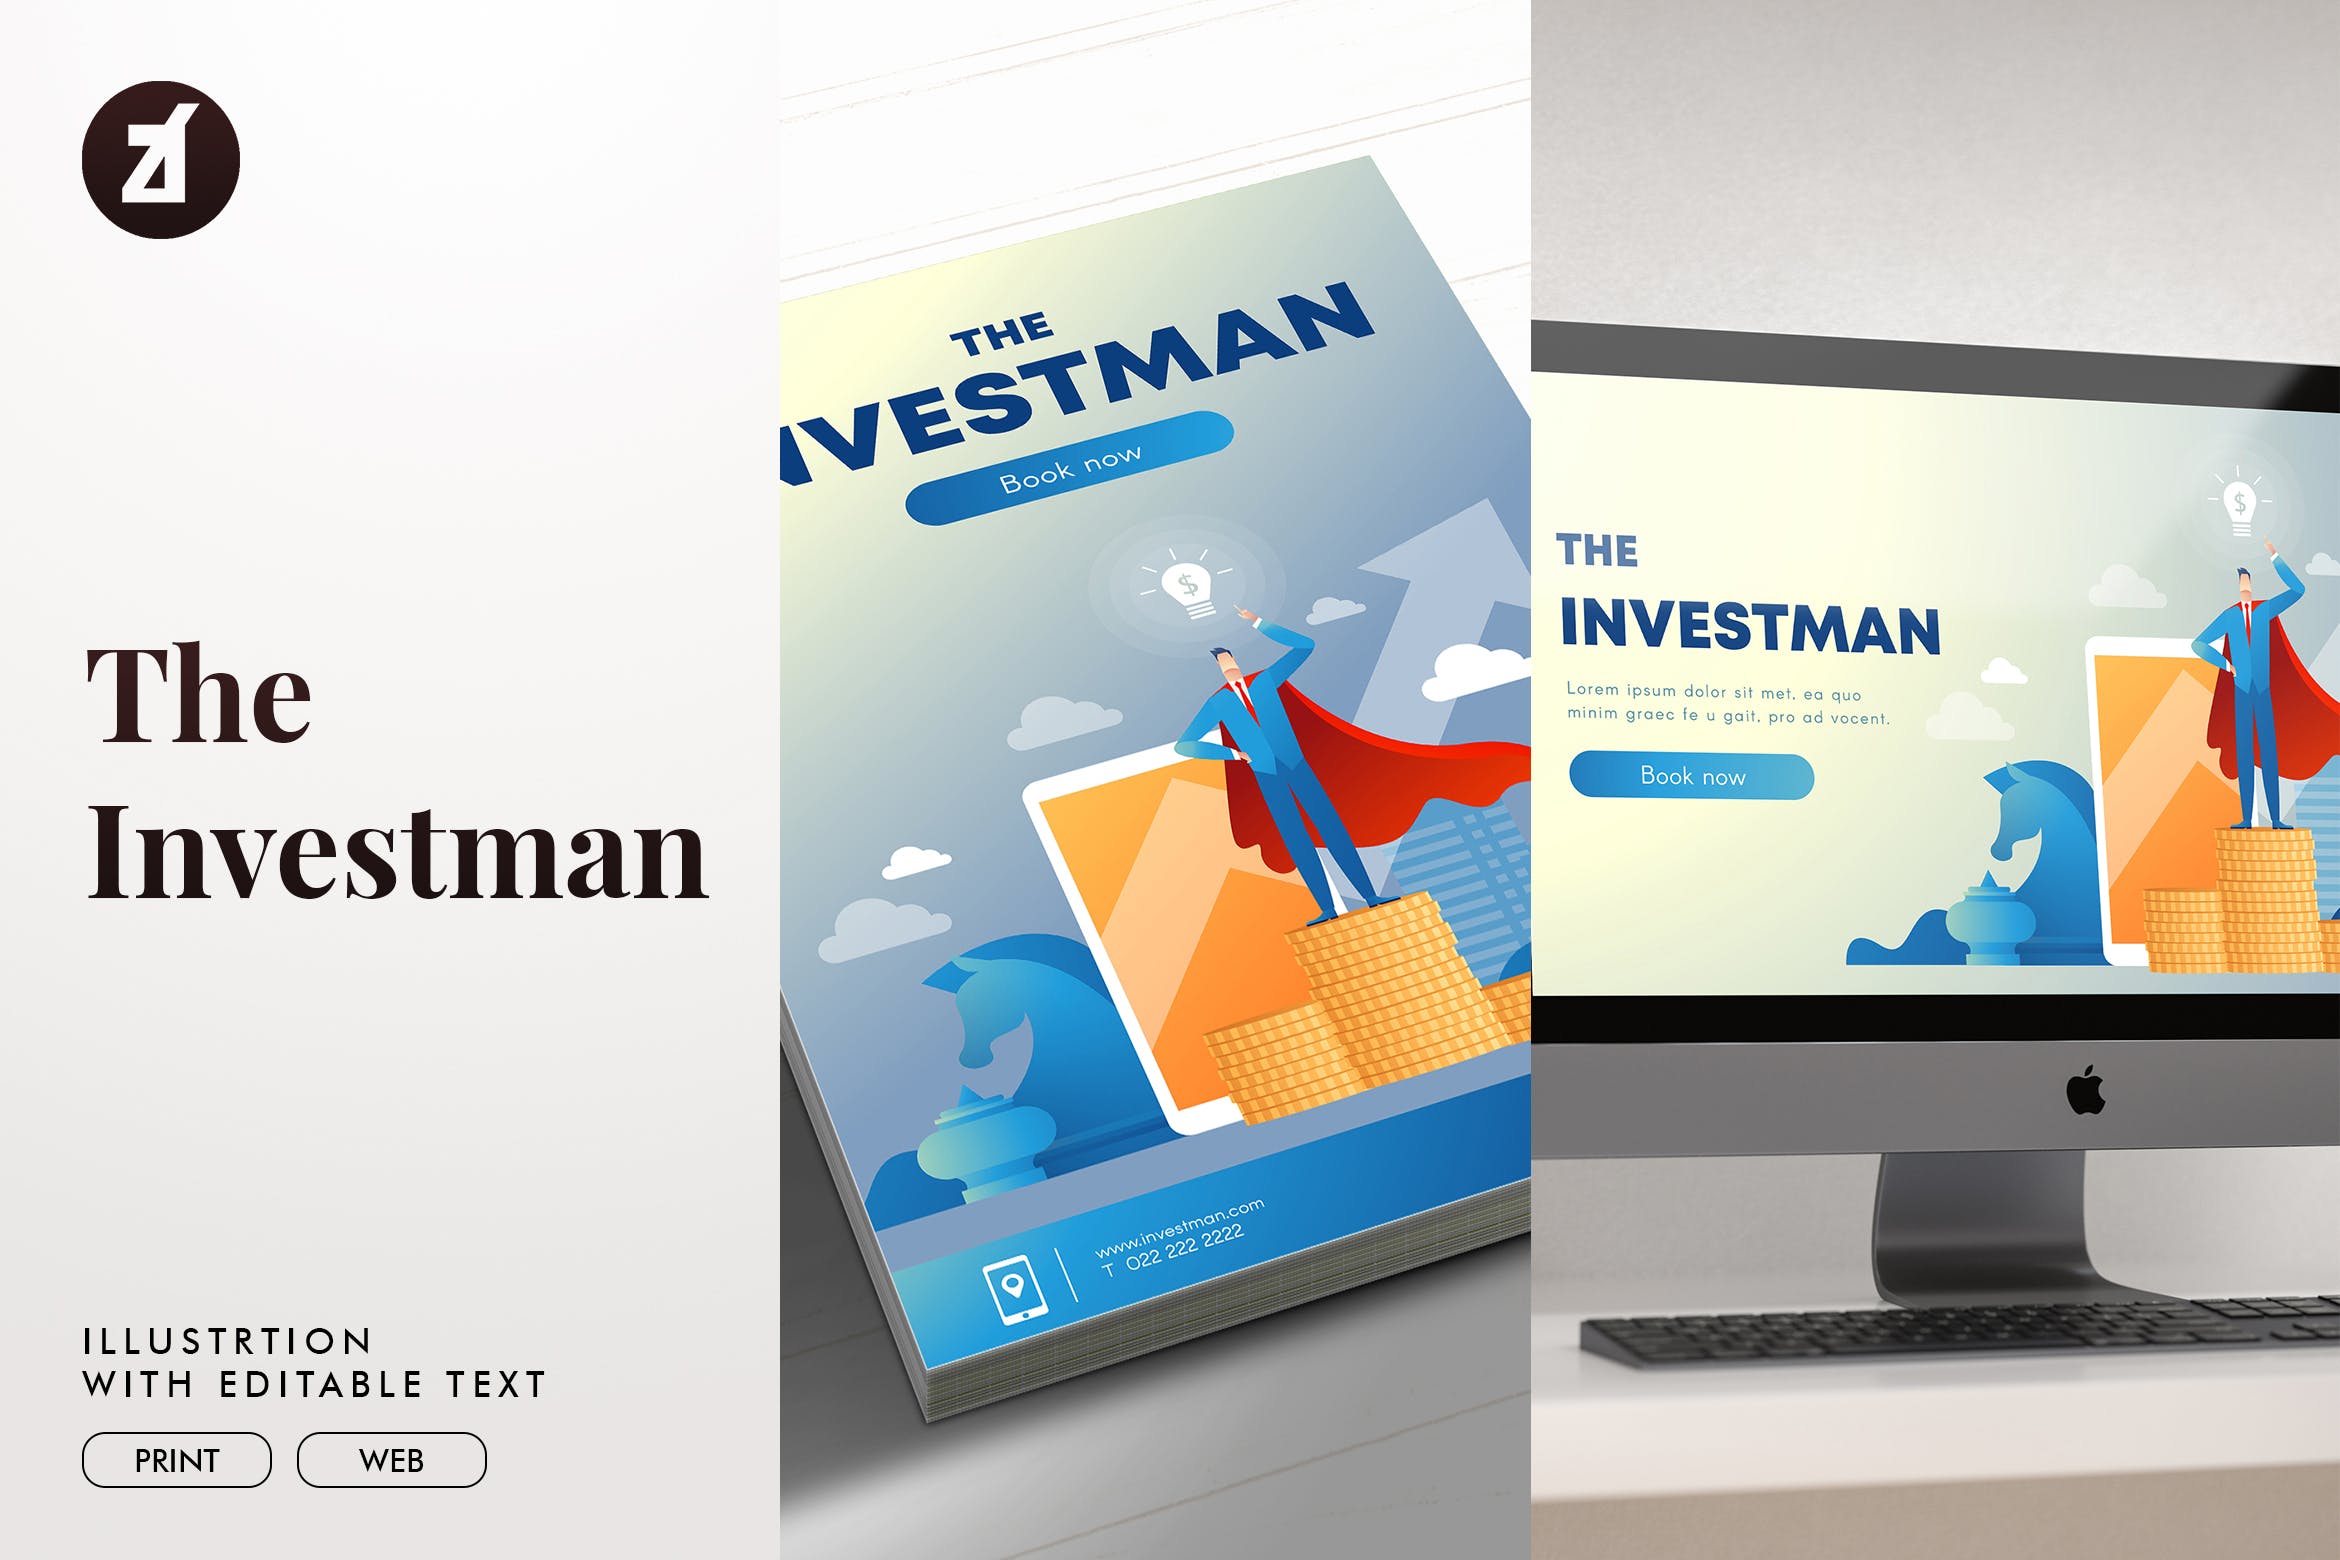 投资者主题矢量蚂蚁素材精选概念插画素材 The investman illustration with text layout插图